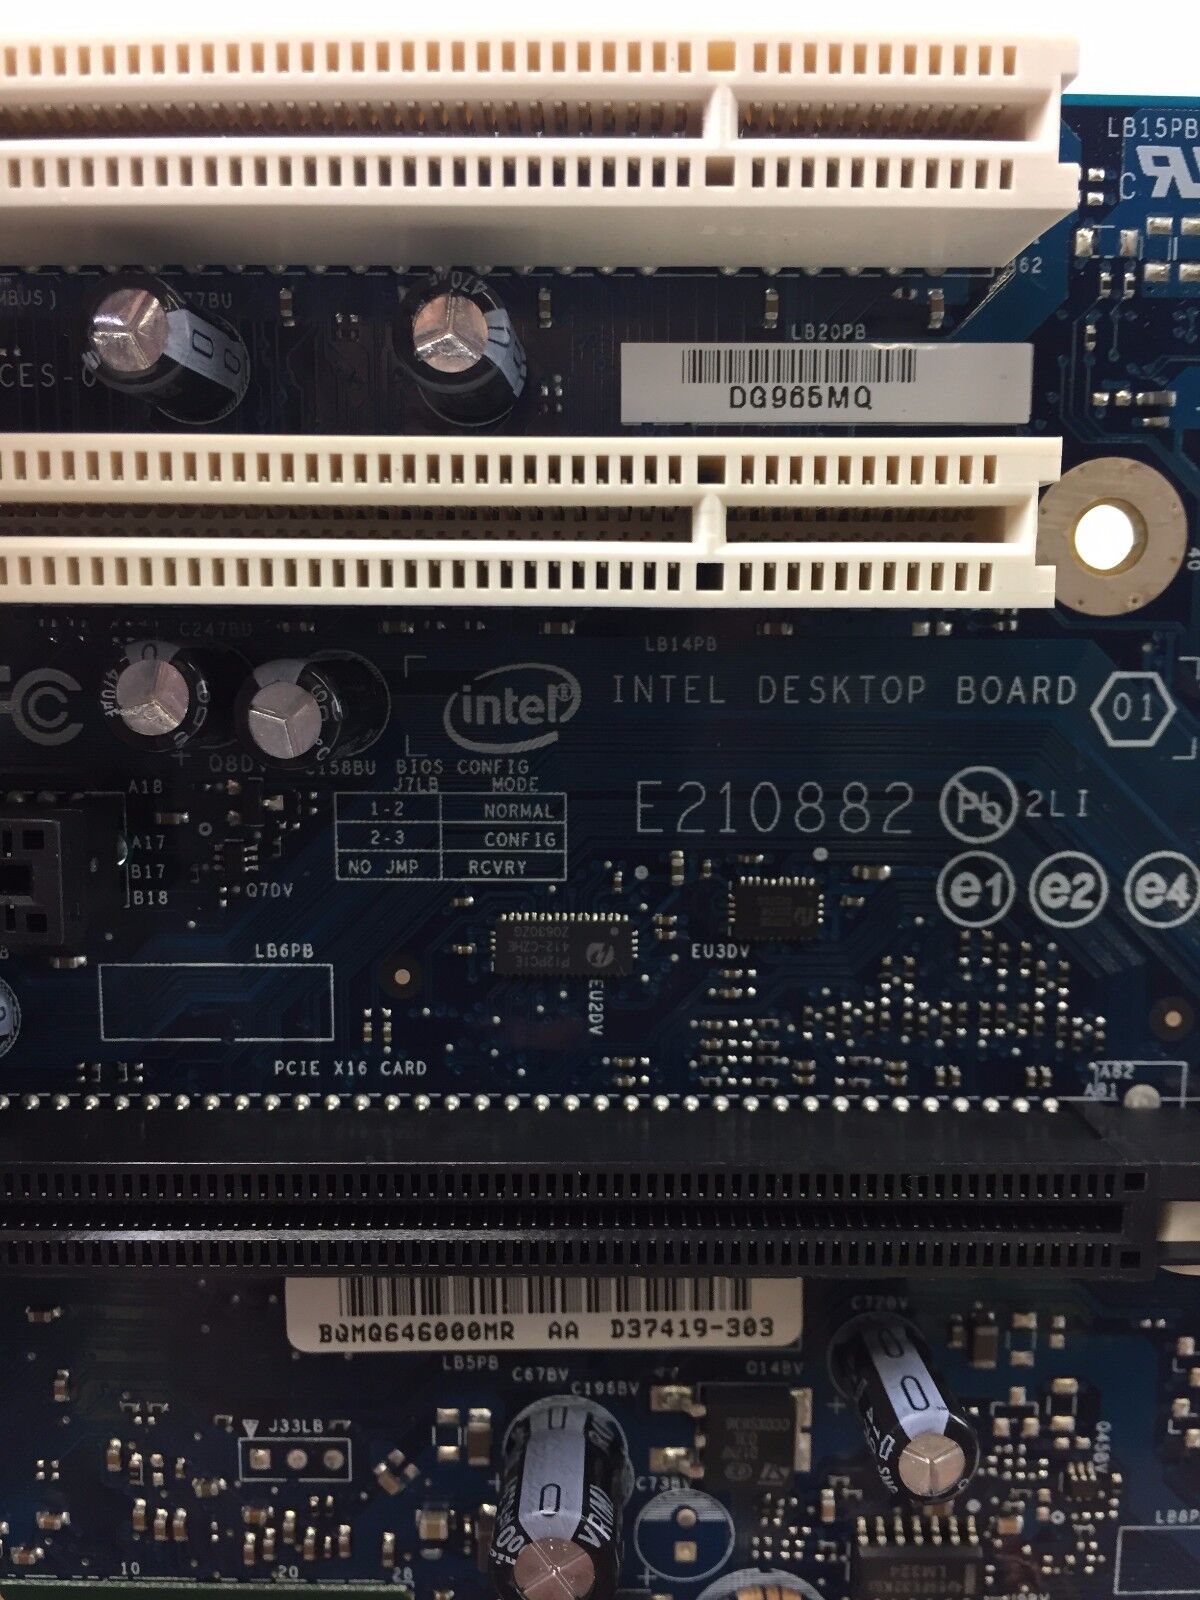 Intel DG965MQ, D37419-302 LGA 775/Socket T with Accessories